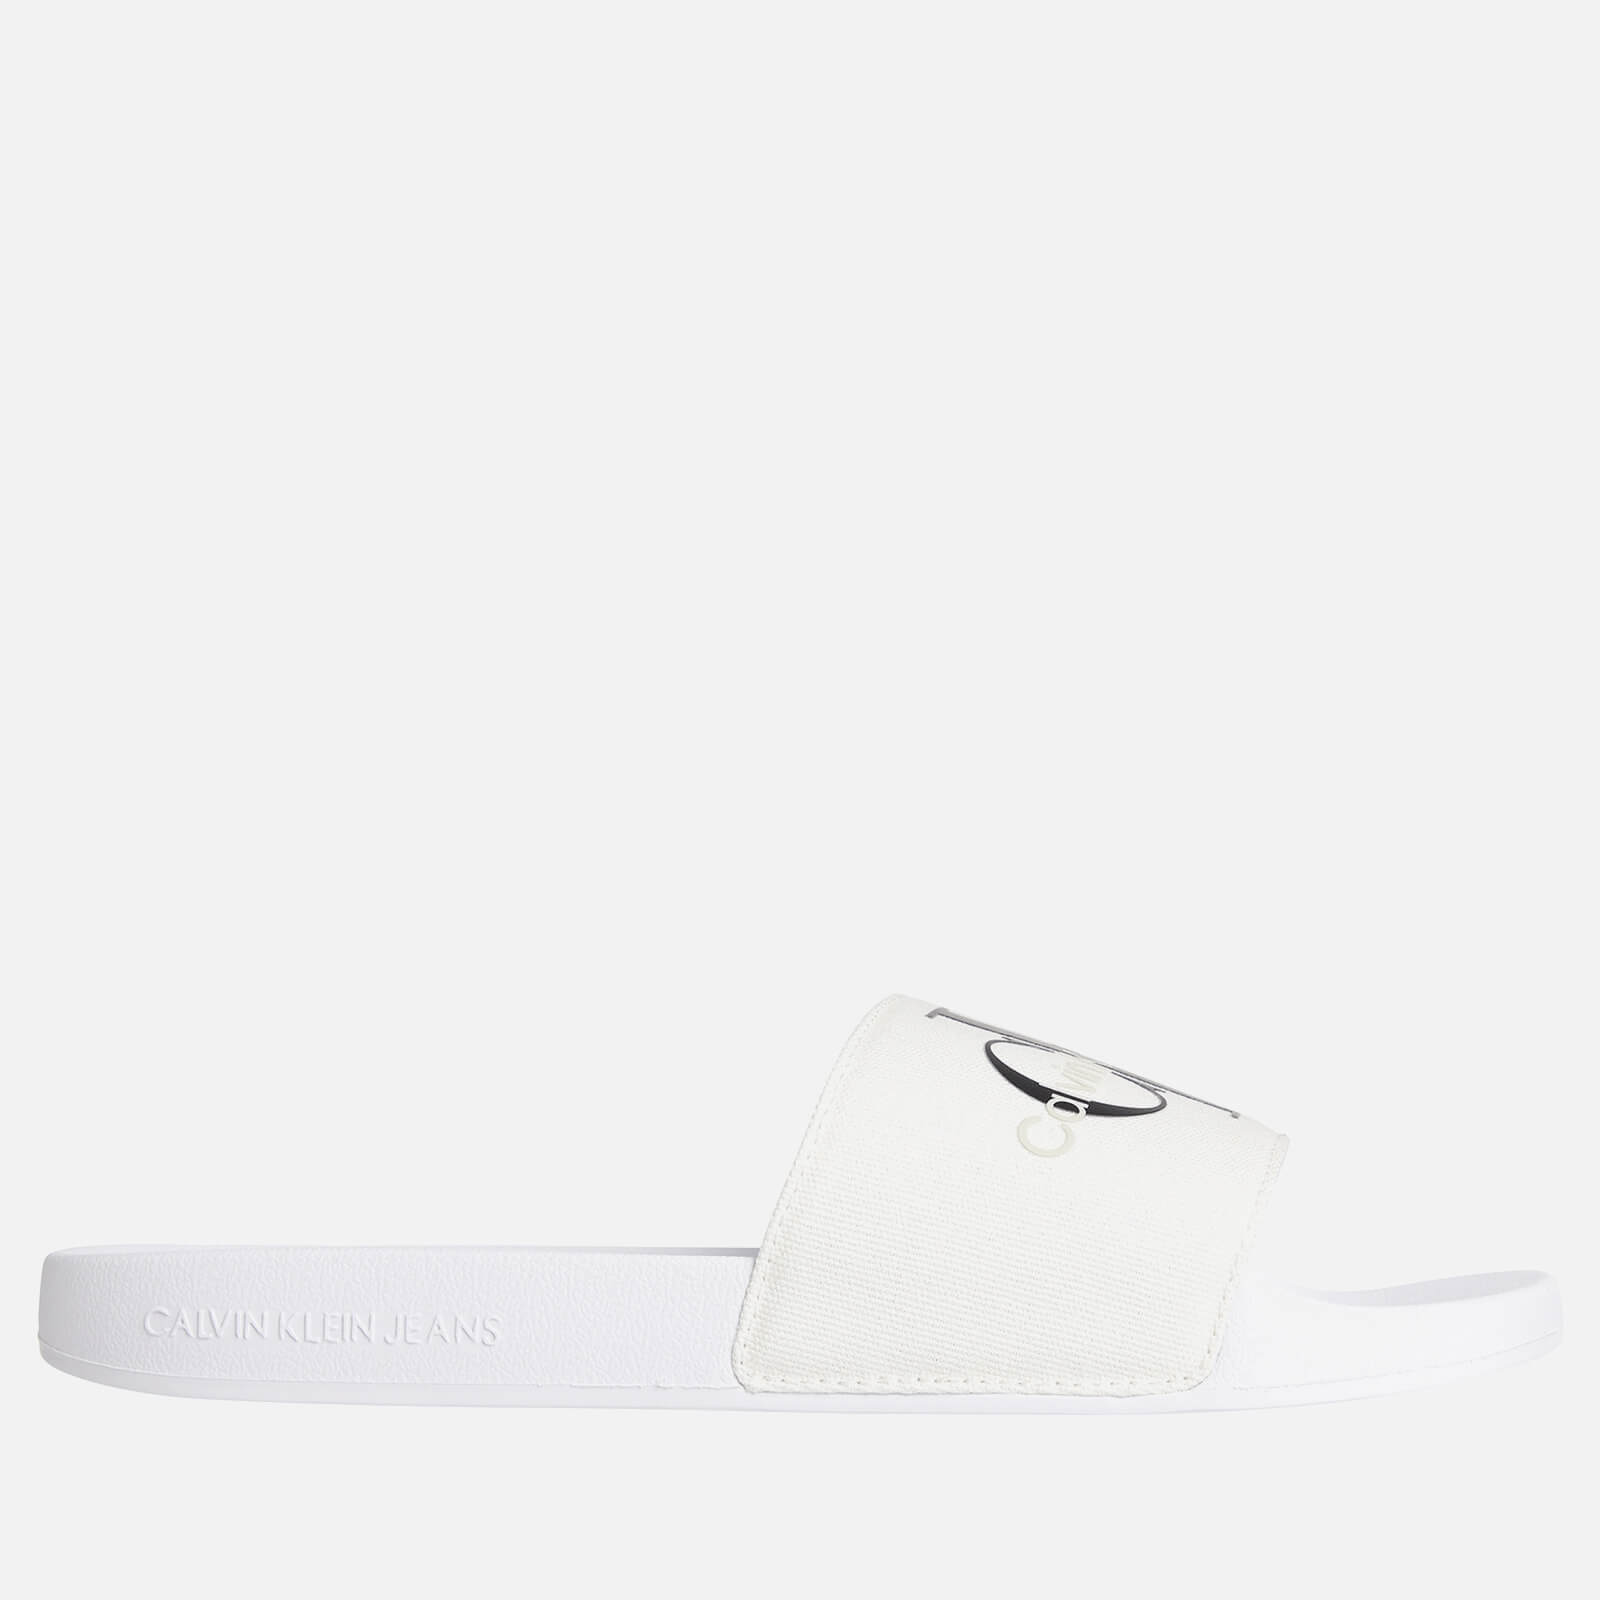 Calvin Klein Jeans Men's Monogram Slide Sandals - Bright White - UK 7